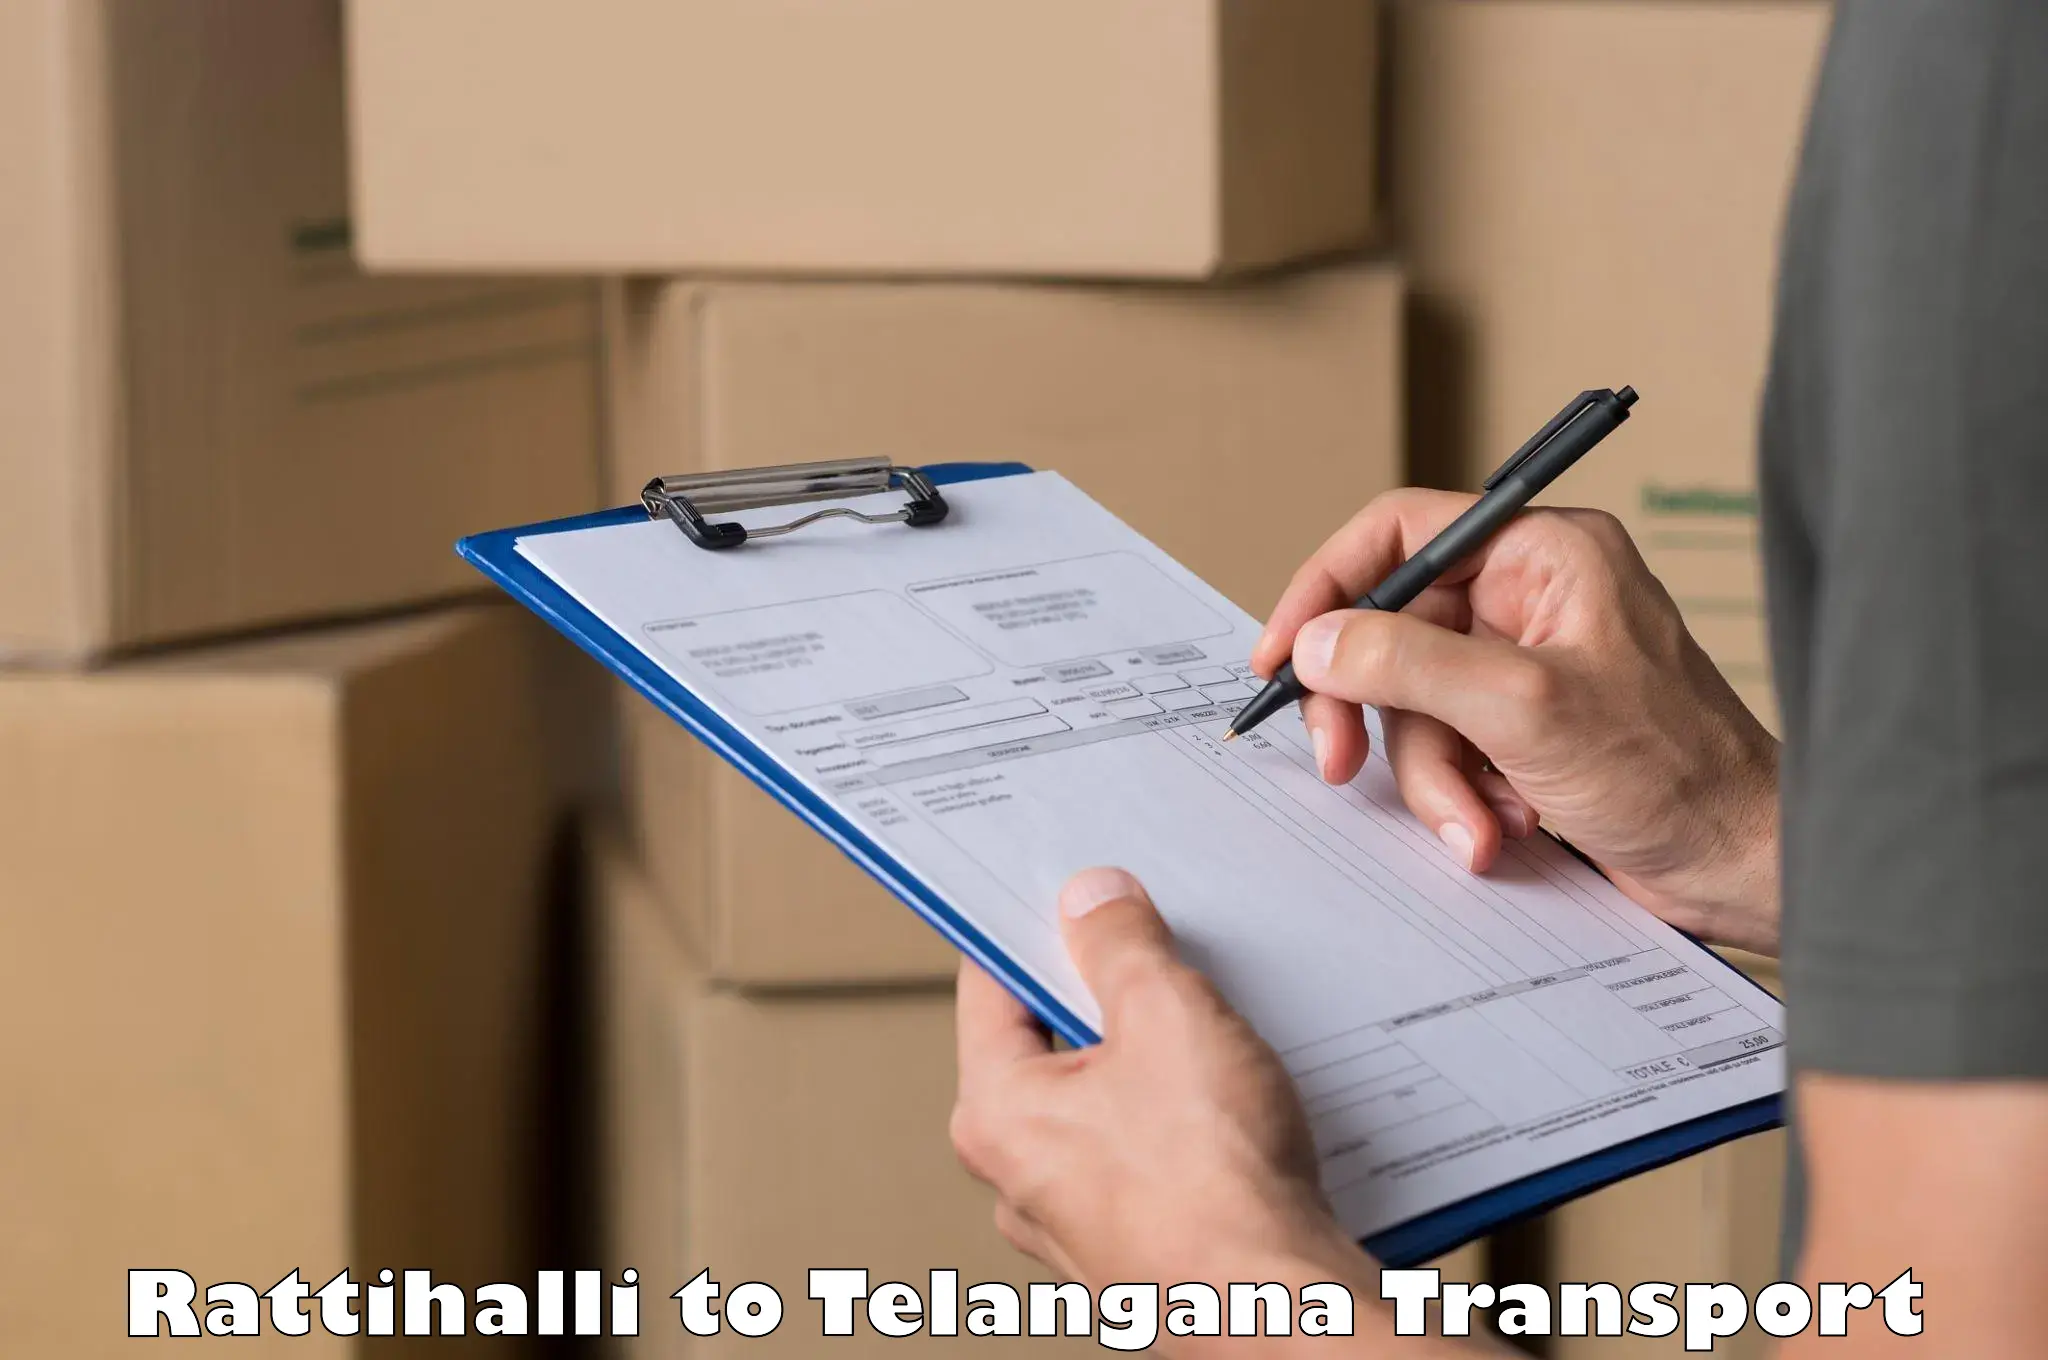 Delivery service Rattihalli to Manneguda